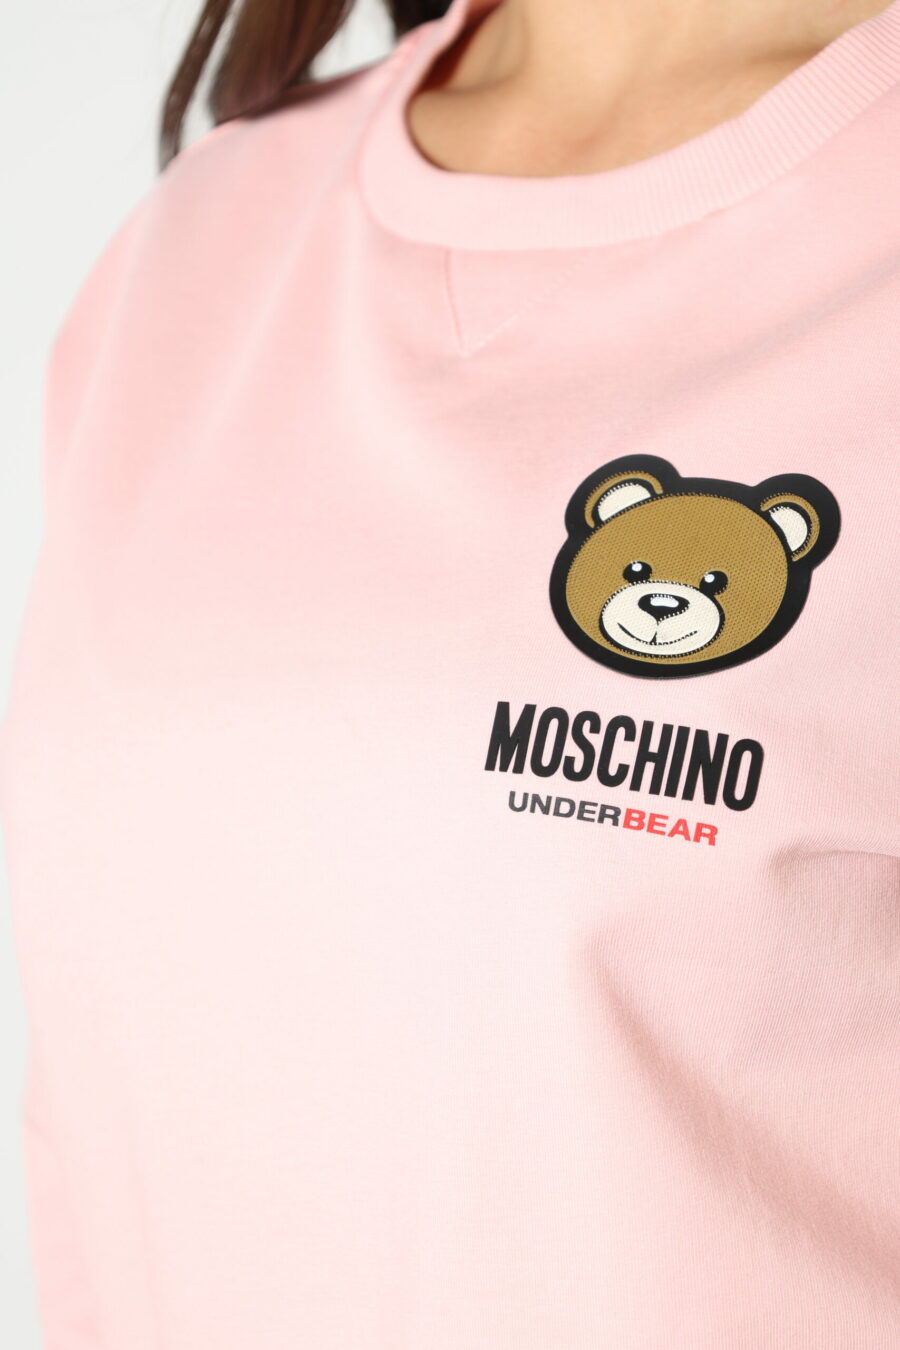 Camisola cor-de-rosa com emblema com o logótipo do urso "underbear" - 8052865435499 342 scaled